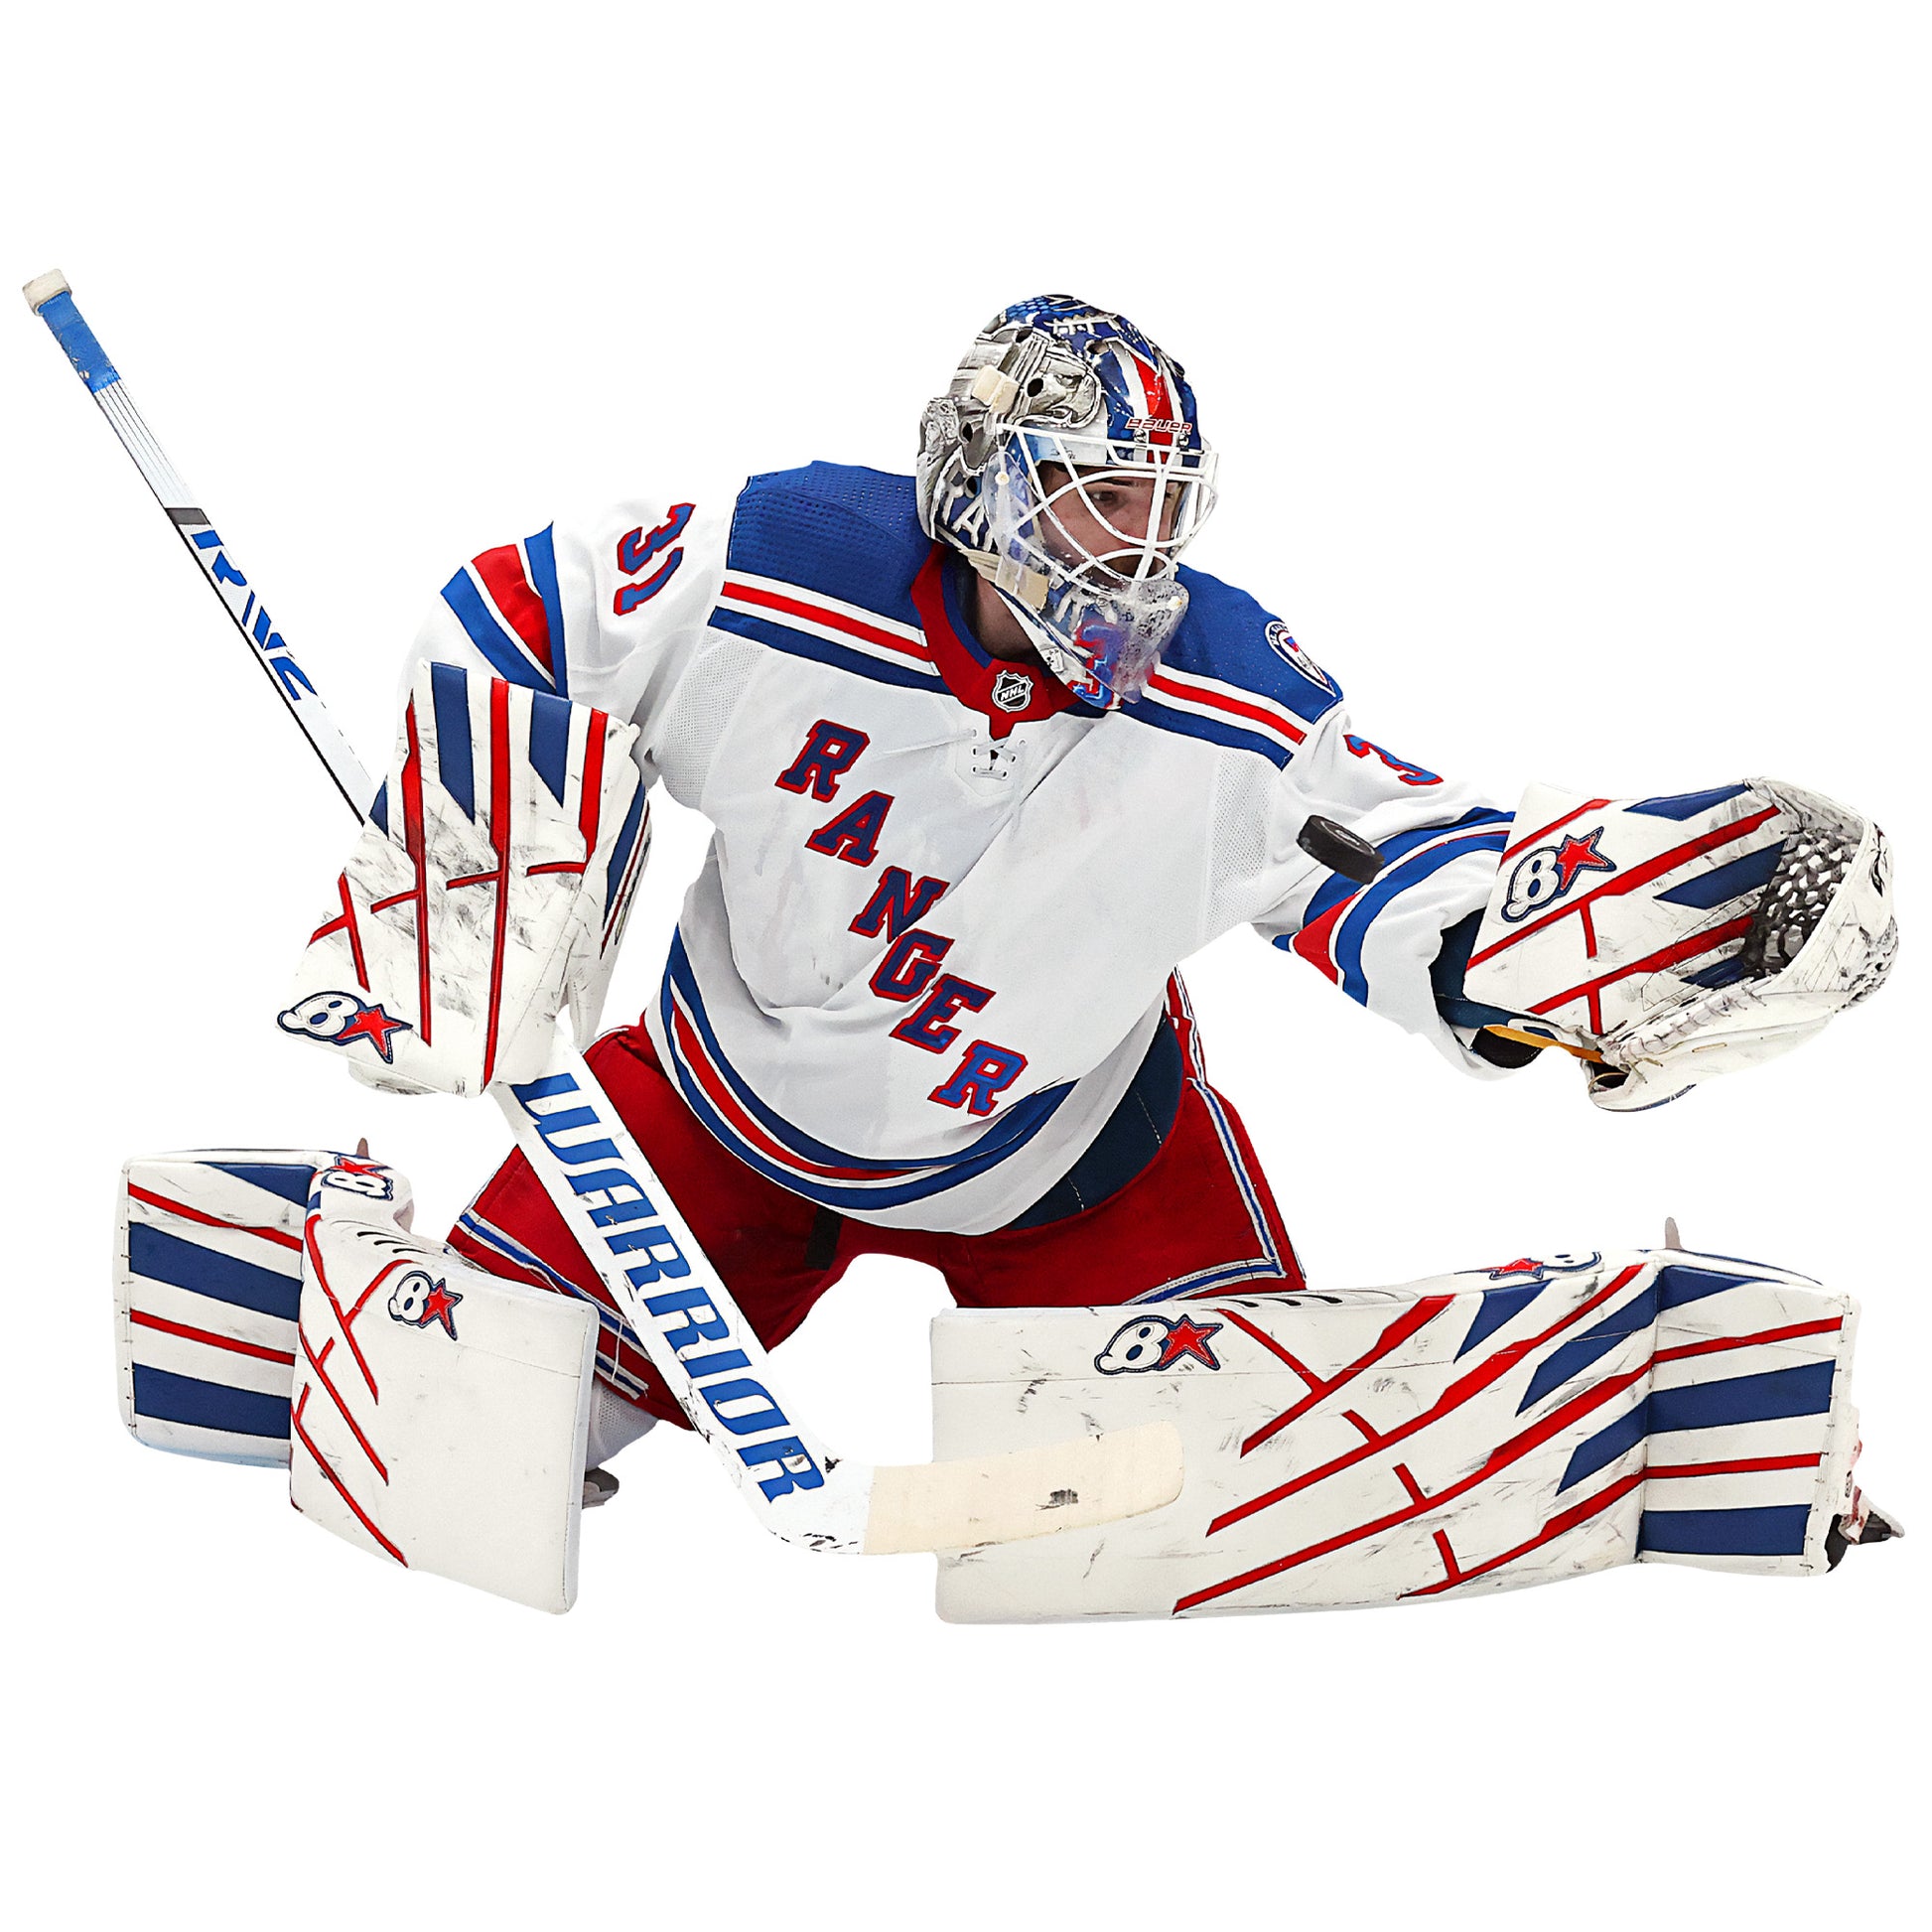 New York Rangers: Igor Shesterkin 2022 - Officially Licensed NHL